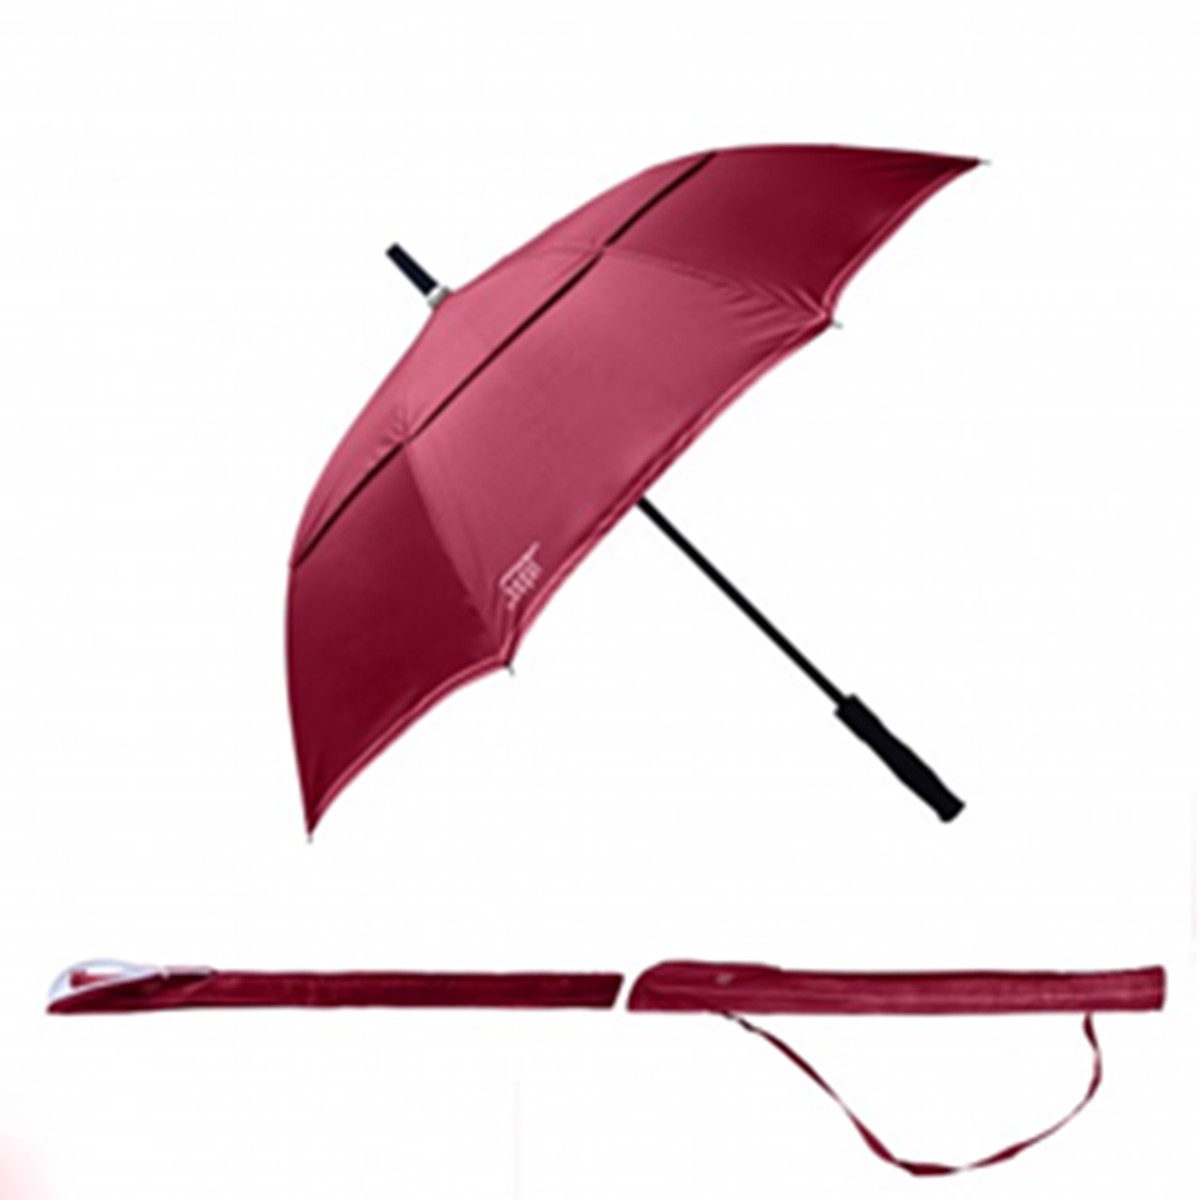   Parapluie Le Gentleman Rouge grenat 85.5cm